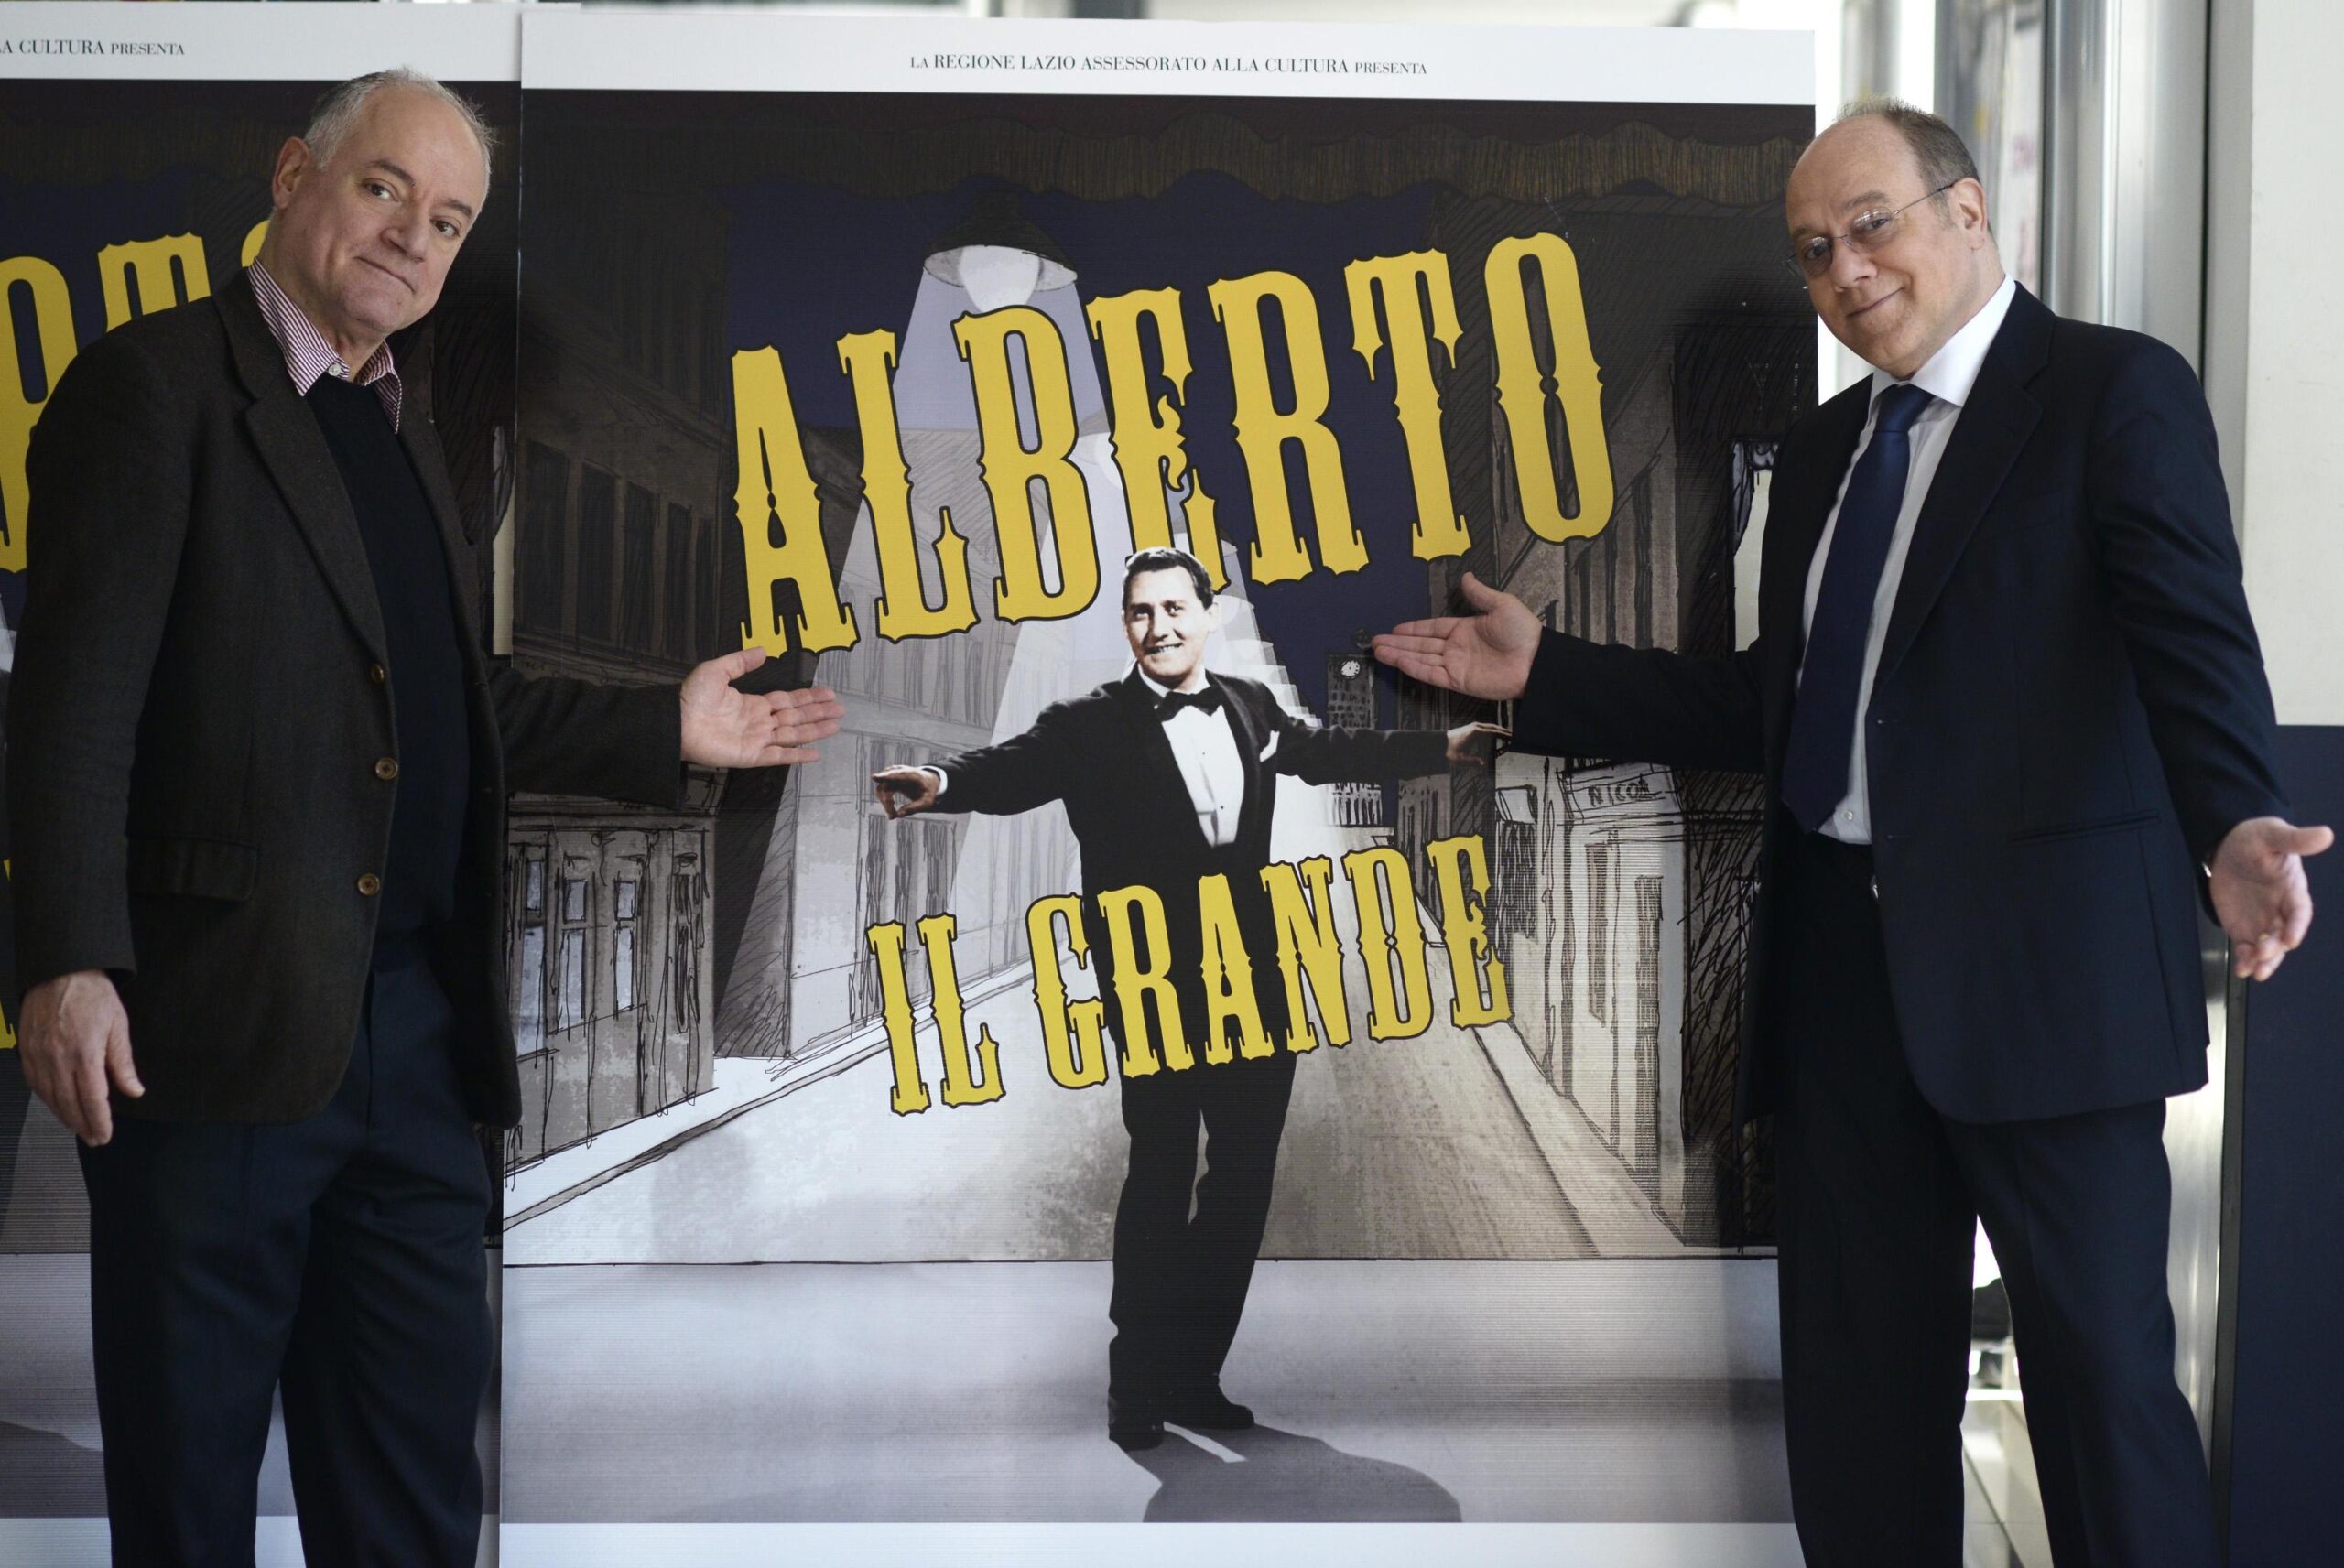 Carlo e Luca Verdone presentano documentario su Alberto Sordi 05